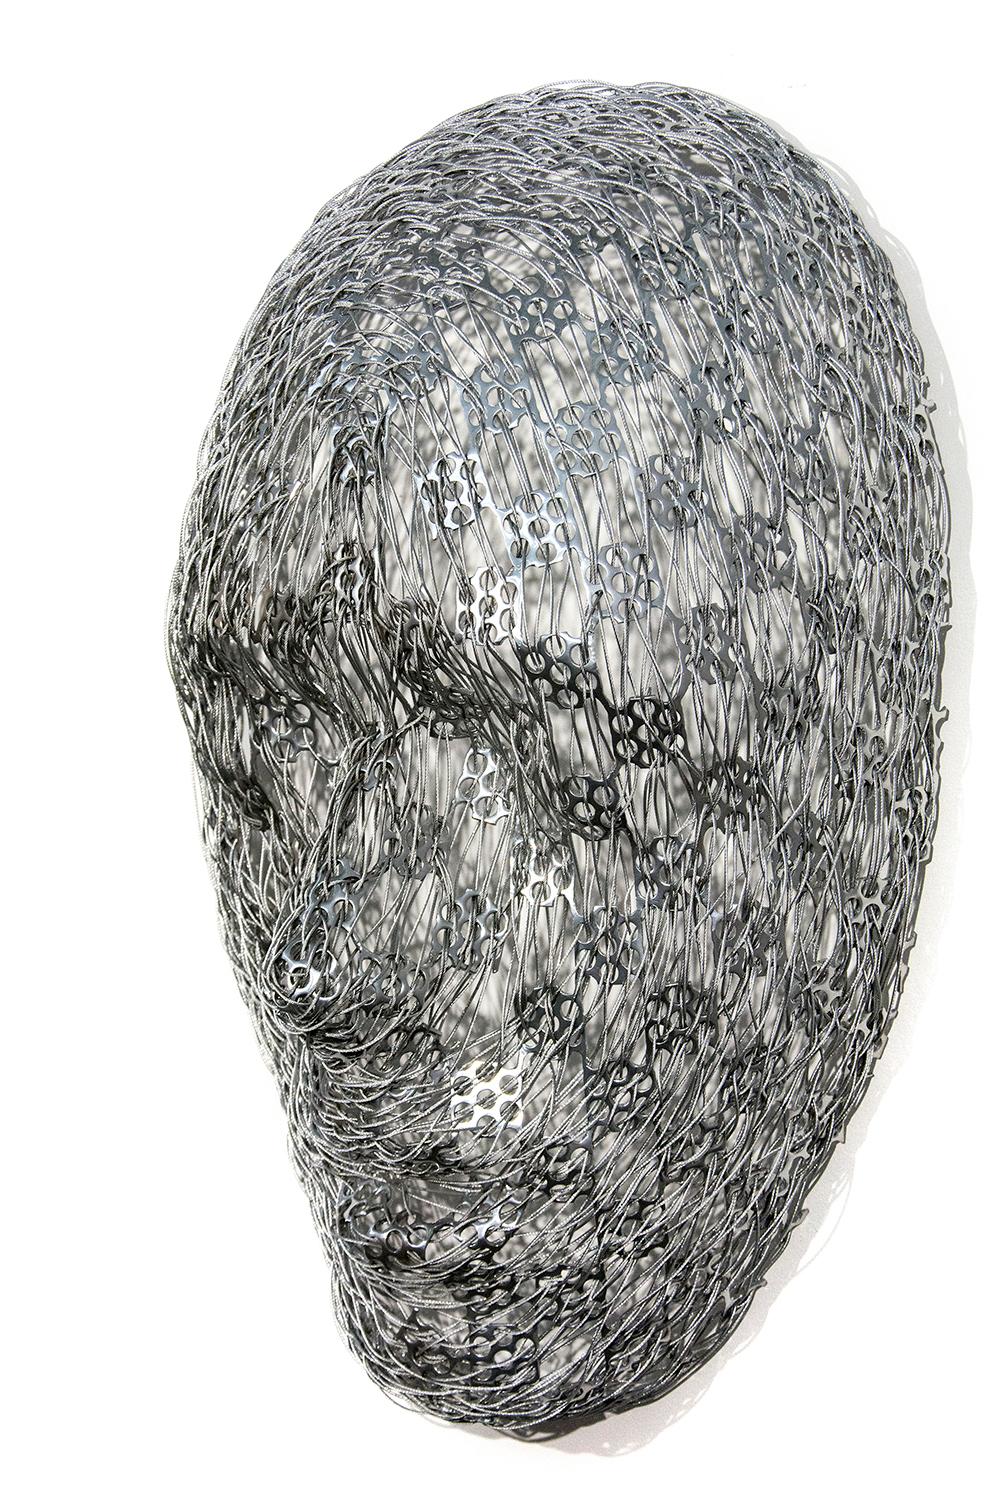 Wandskulptur in verschlungenem Silber, abstraktes menschliches Gesicht, Edelstahl und Kabel – Sculpture von Dale Dunning